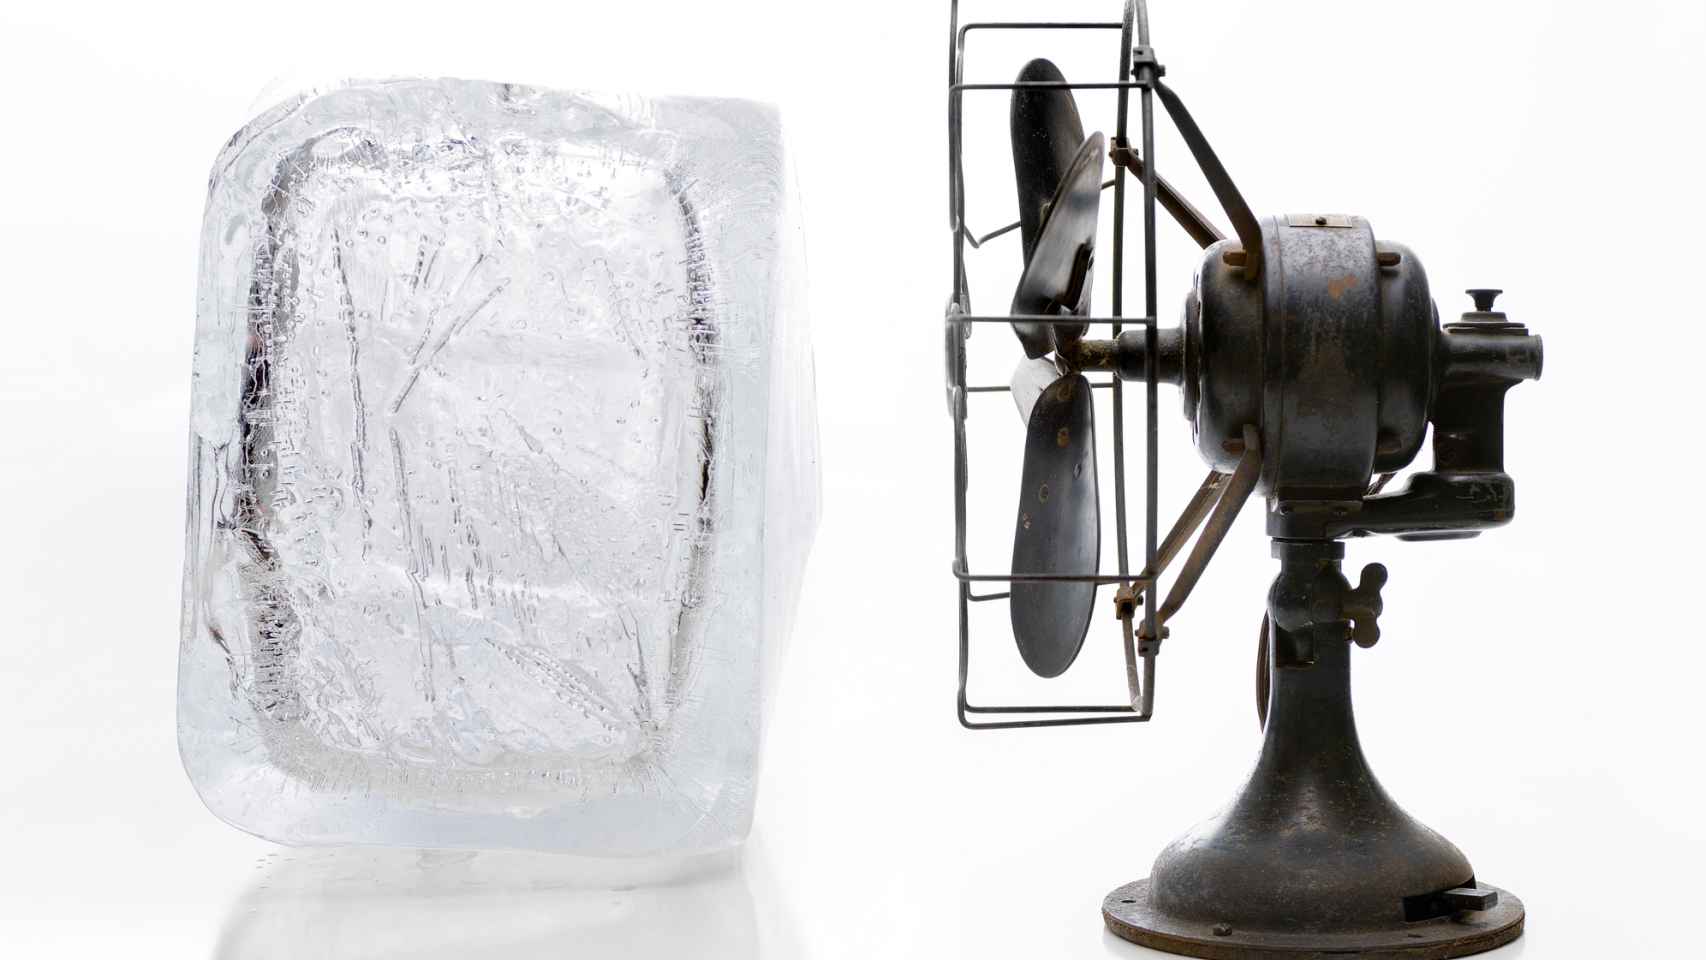 Bloque de hielo junto a un ventilador.